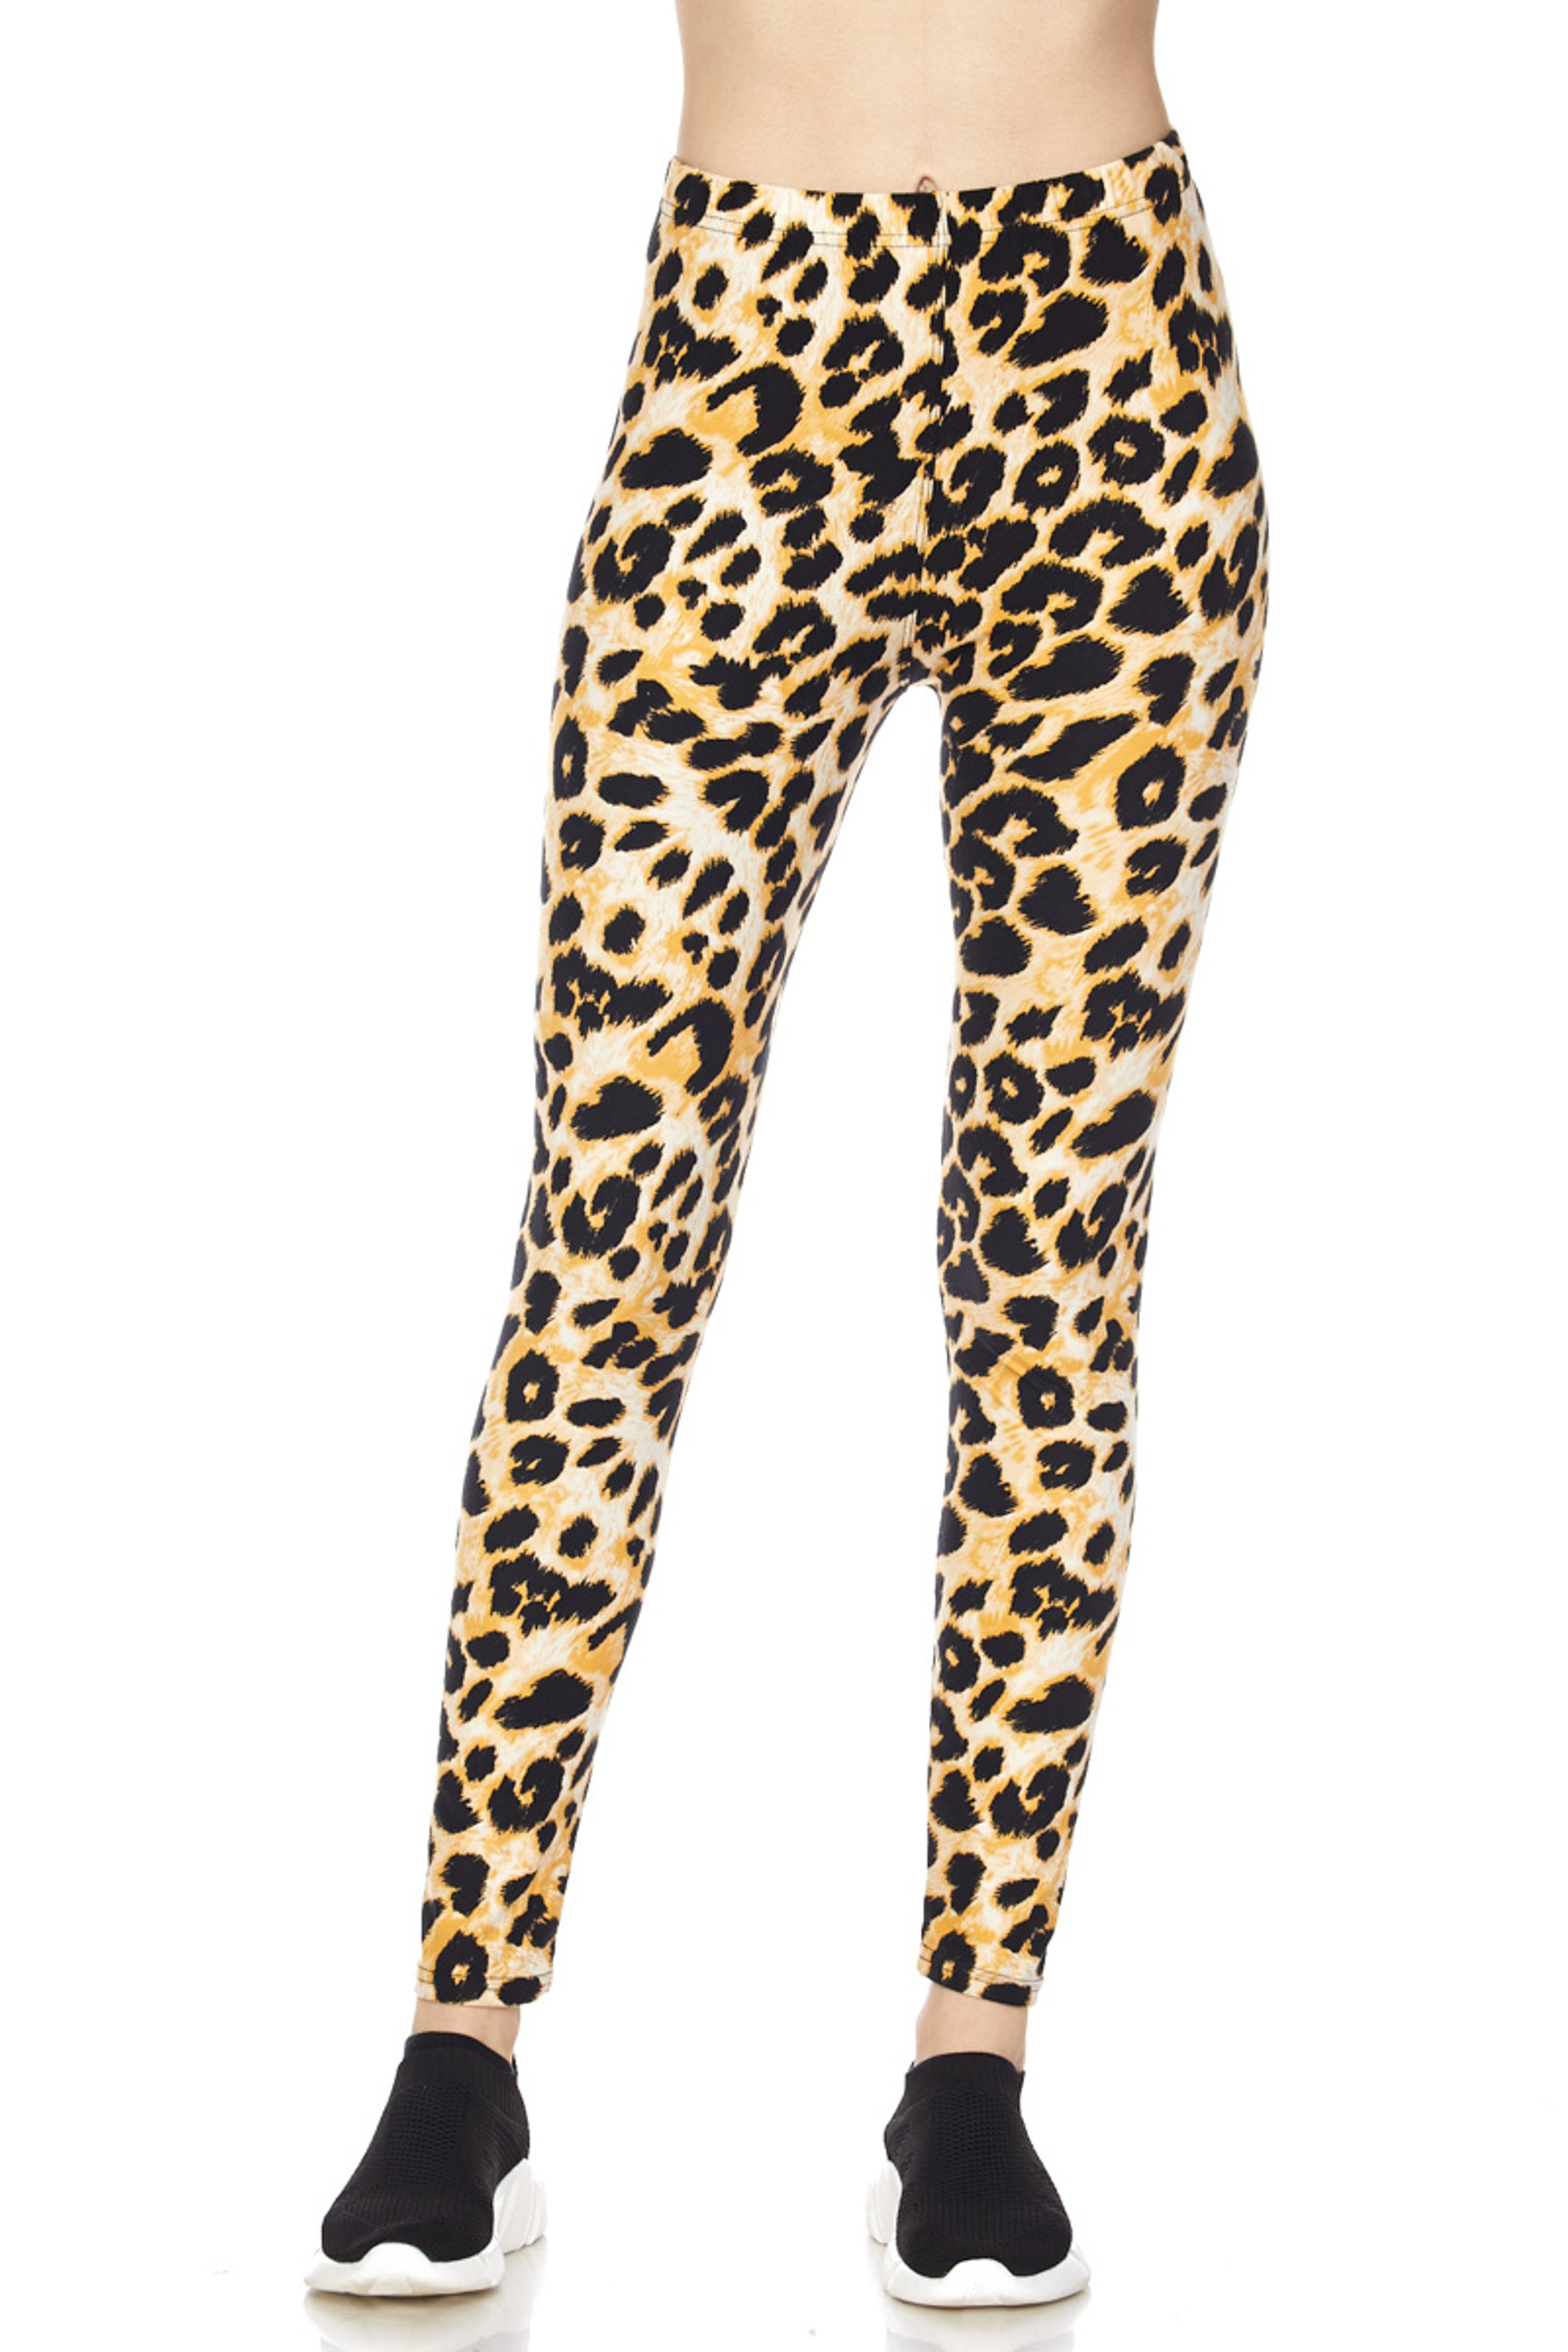 BrushedDesert Leopard Plus Size Leggings - 3X-5X